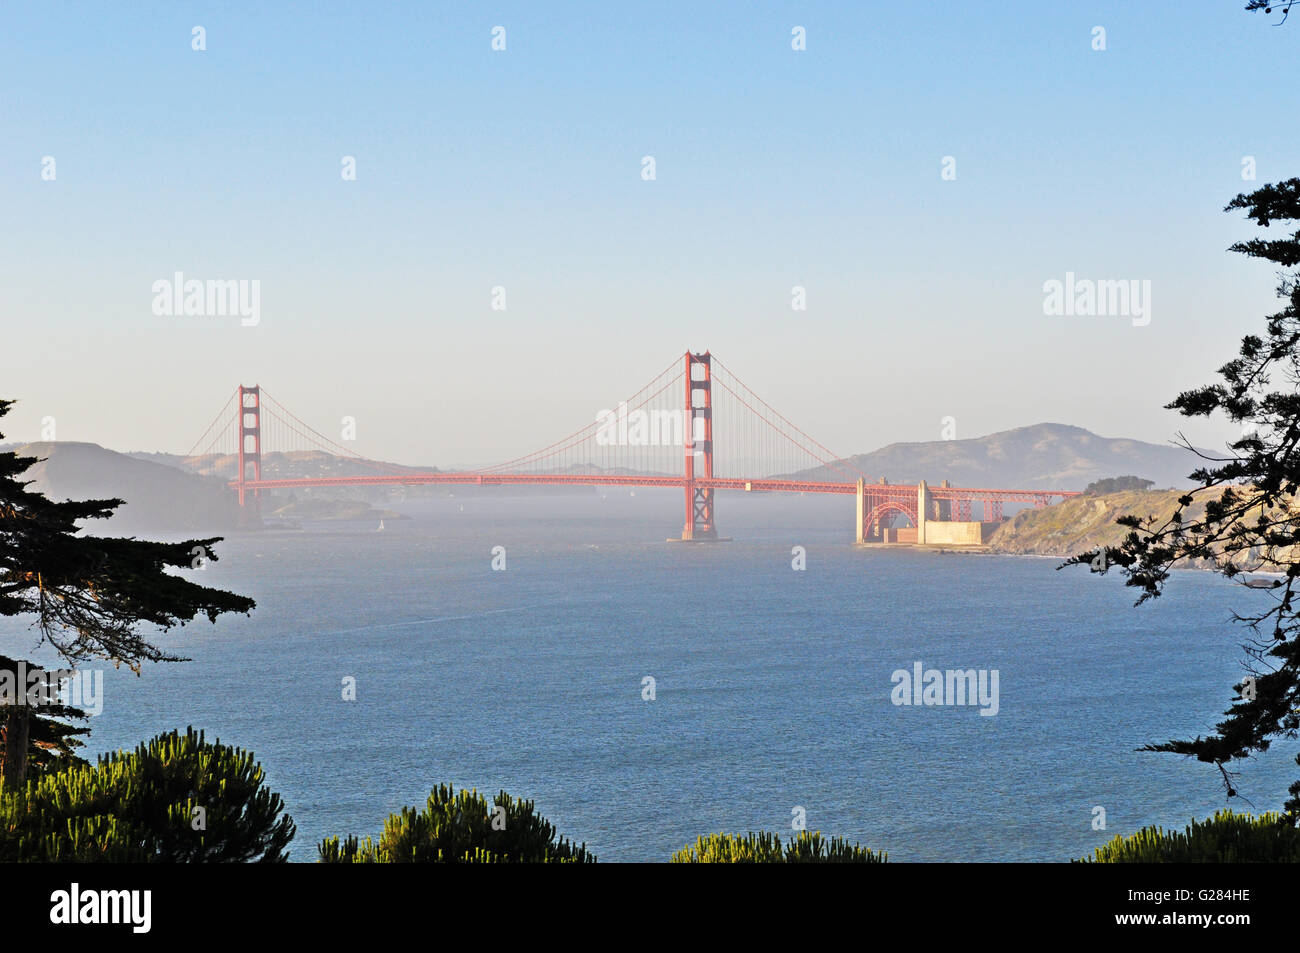 San Francisco: vista panorámica del Golden Gate Bridge, inaugurado en 1936, el símbolo de la ciudad de San Francisco en el mundo Foto de stock